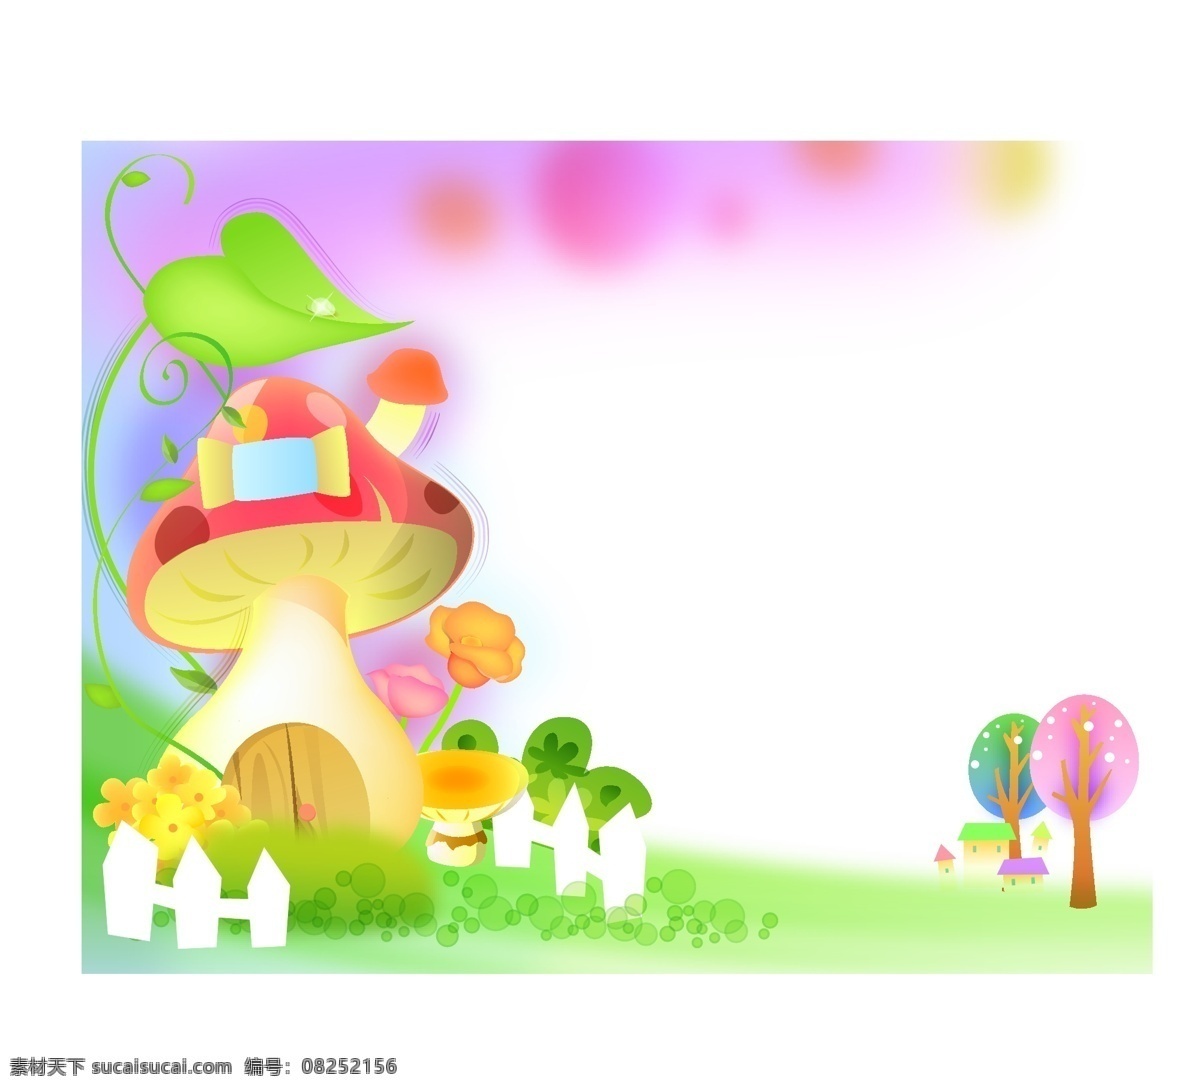 梦幻蘑菇房 蘑菇房 蘑菇 小草 草地 树木 动画 动画背景图 幼儿园图库 幼儿园 设计素材 梦幻 矢量